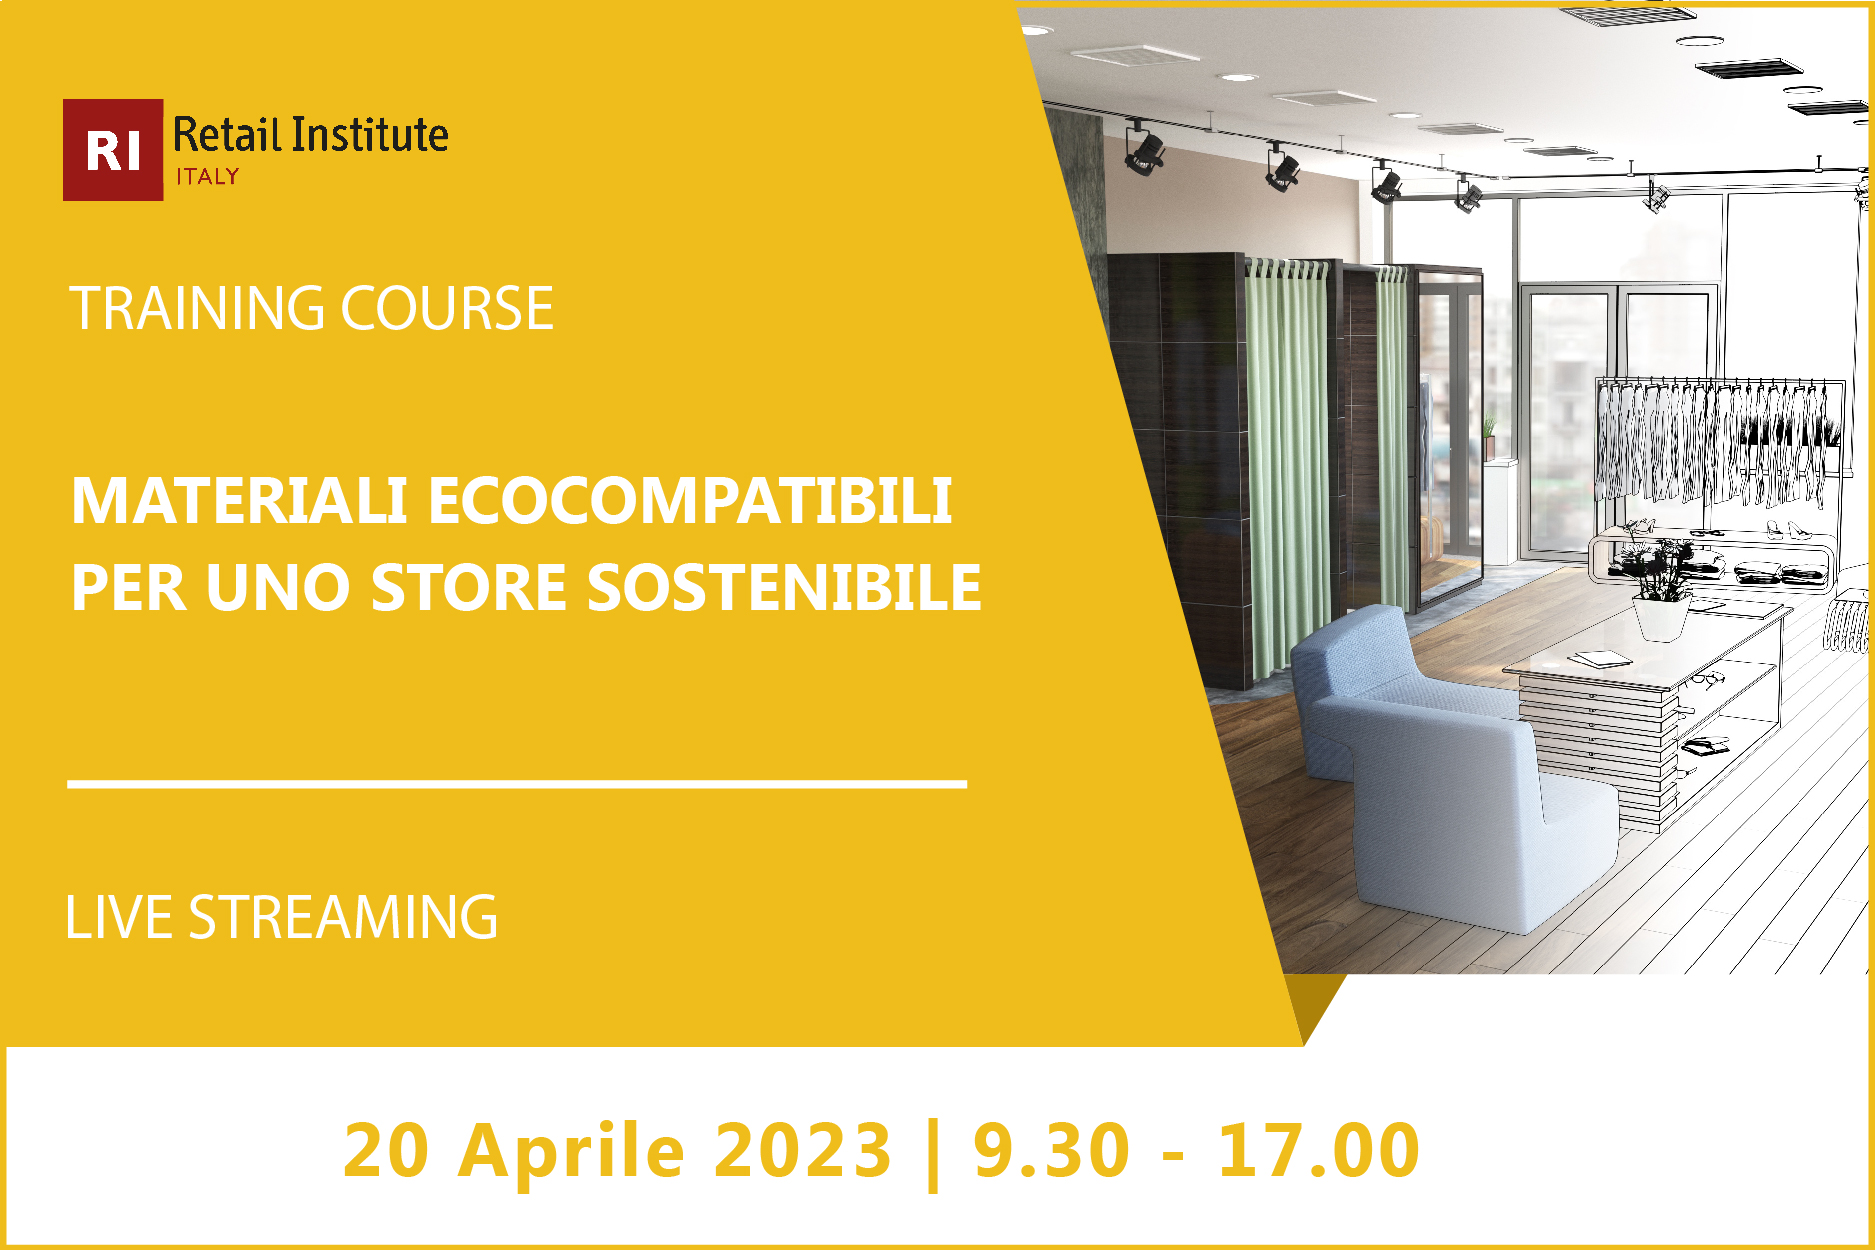 Training Course “Materiali ecocompatibili per uno store sostenibile” – 20 aprile 2023